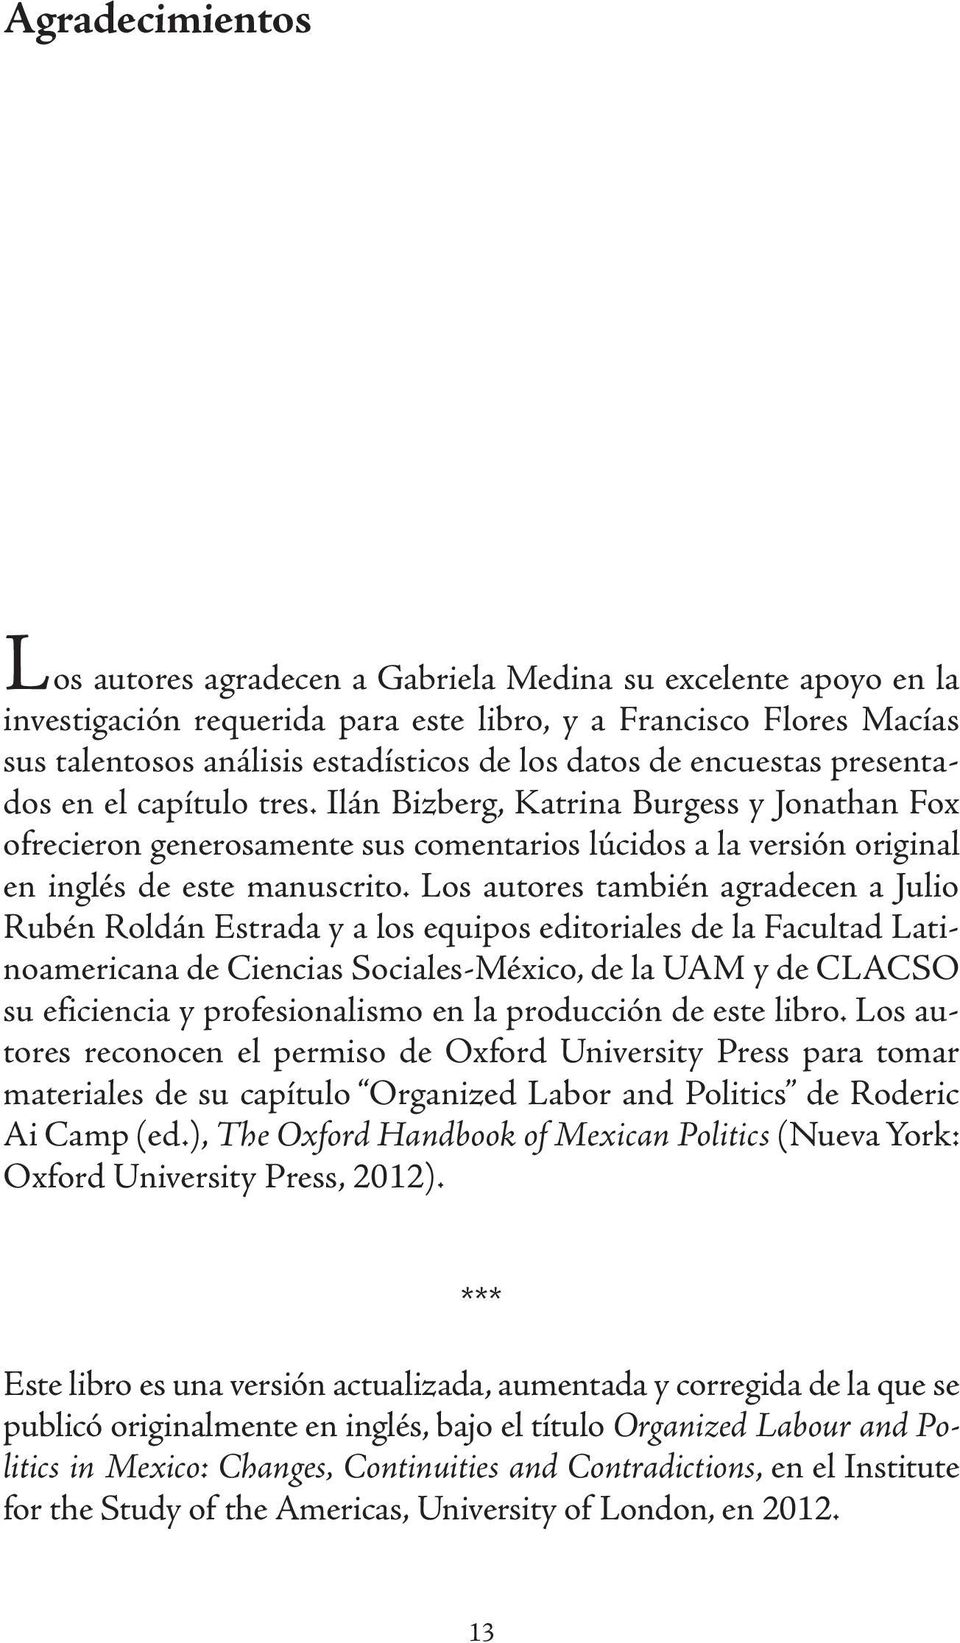 Los autores también agradecen a Julio Rubén Roldán Estrada y a los equipos editoriales de la Facultad Latinoamericana de Ciencias Sociales-México, de la UAM y de CLACSO su eficiencia y